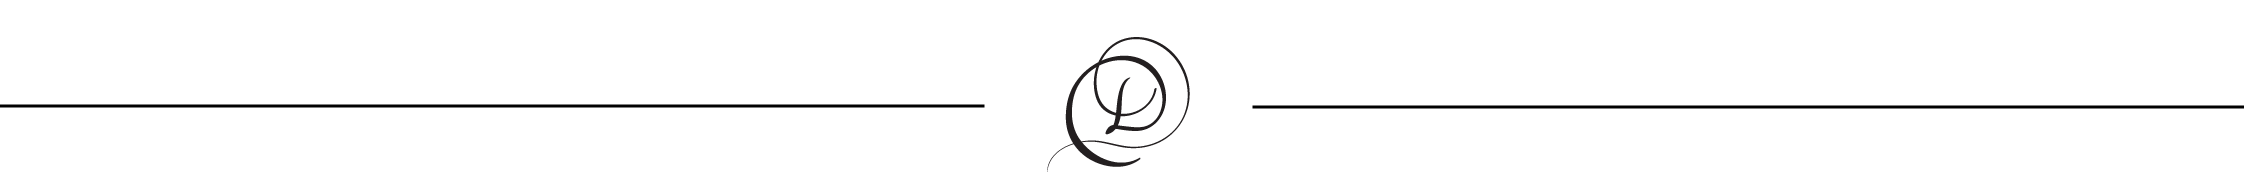 Pietro Di Mauro PNG Logo - Pietro Di Mauro